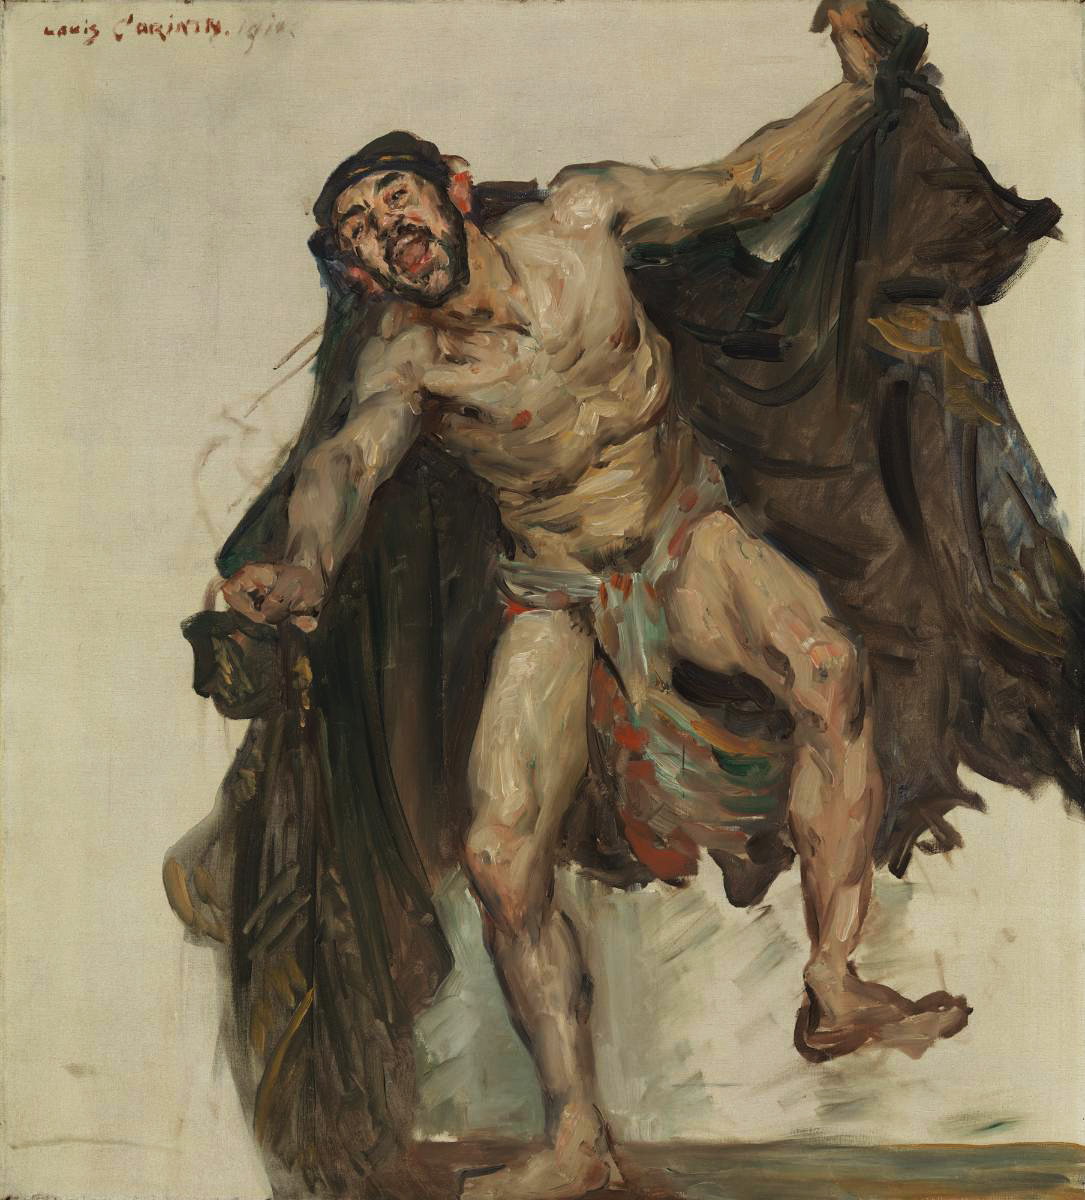 Abbildung: Lovis Corinth, Tanzender Derwisch, Öl auf Leinwand, 1904, Buchheim Museum der Phantasie, Bernried am Starnberger See